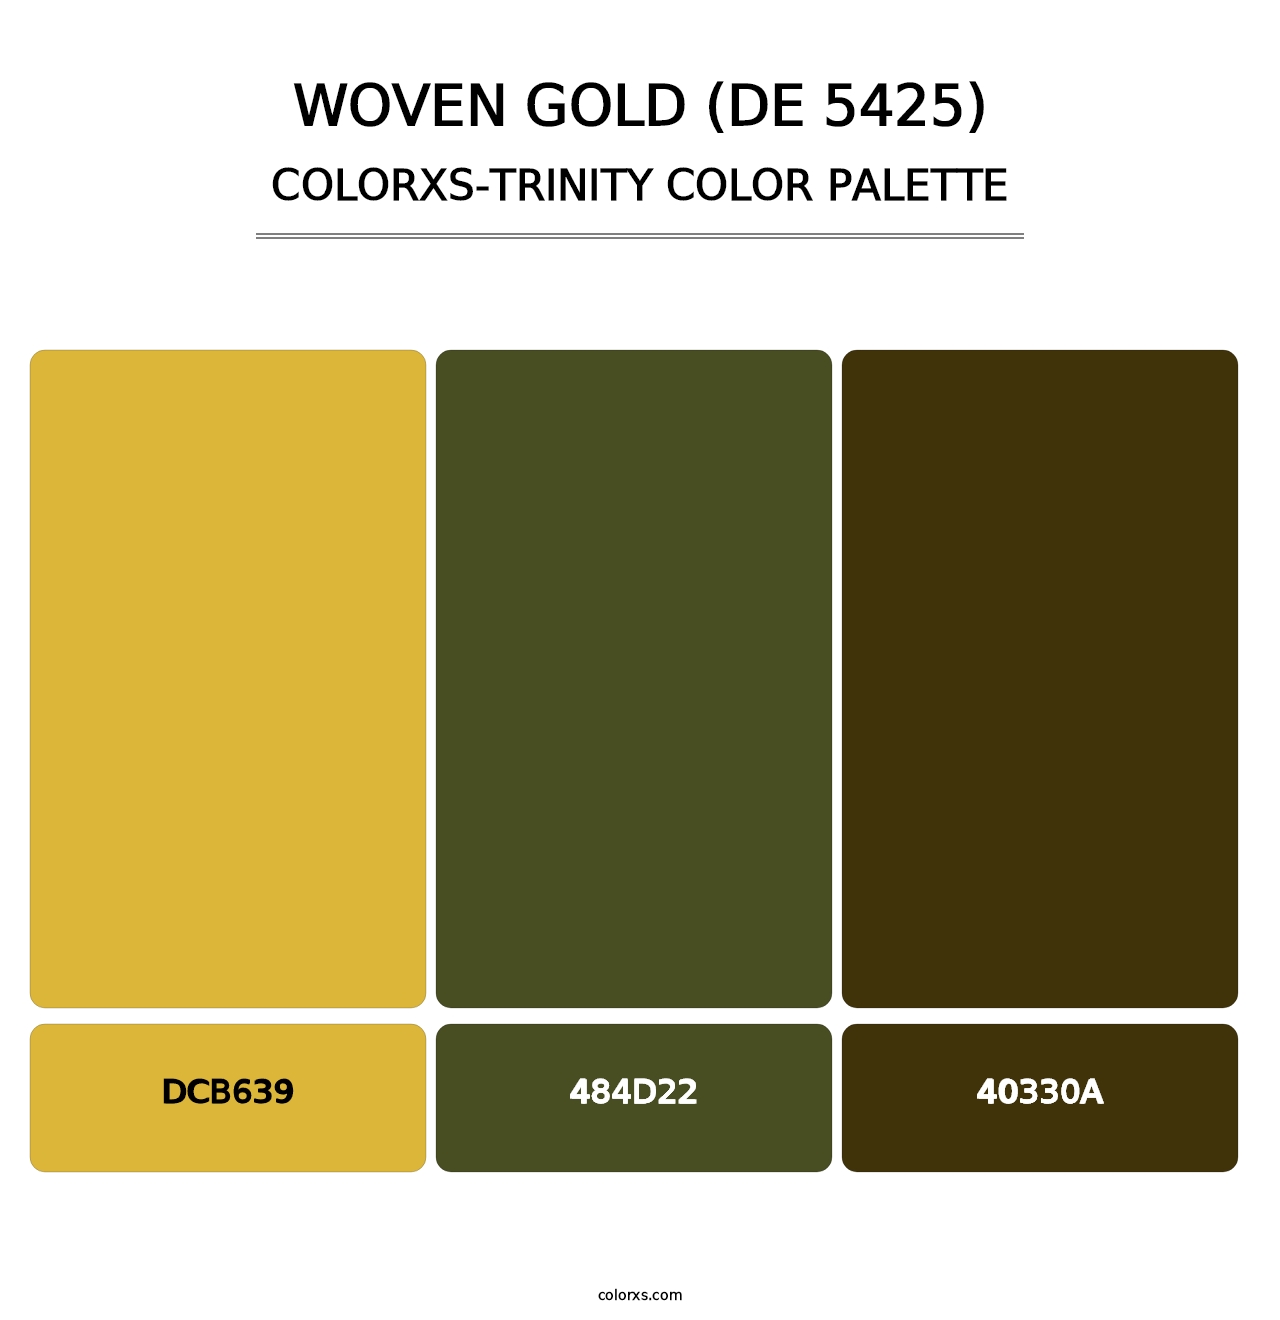 Woven Gold (DE 5425) - Colorxs Trinity Palette